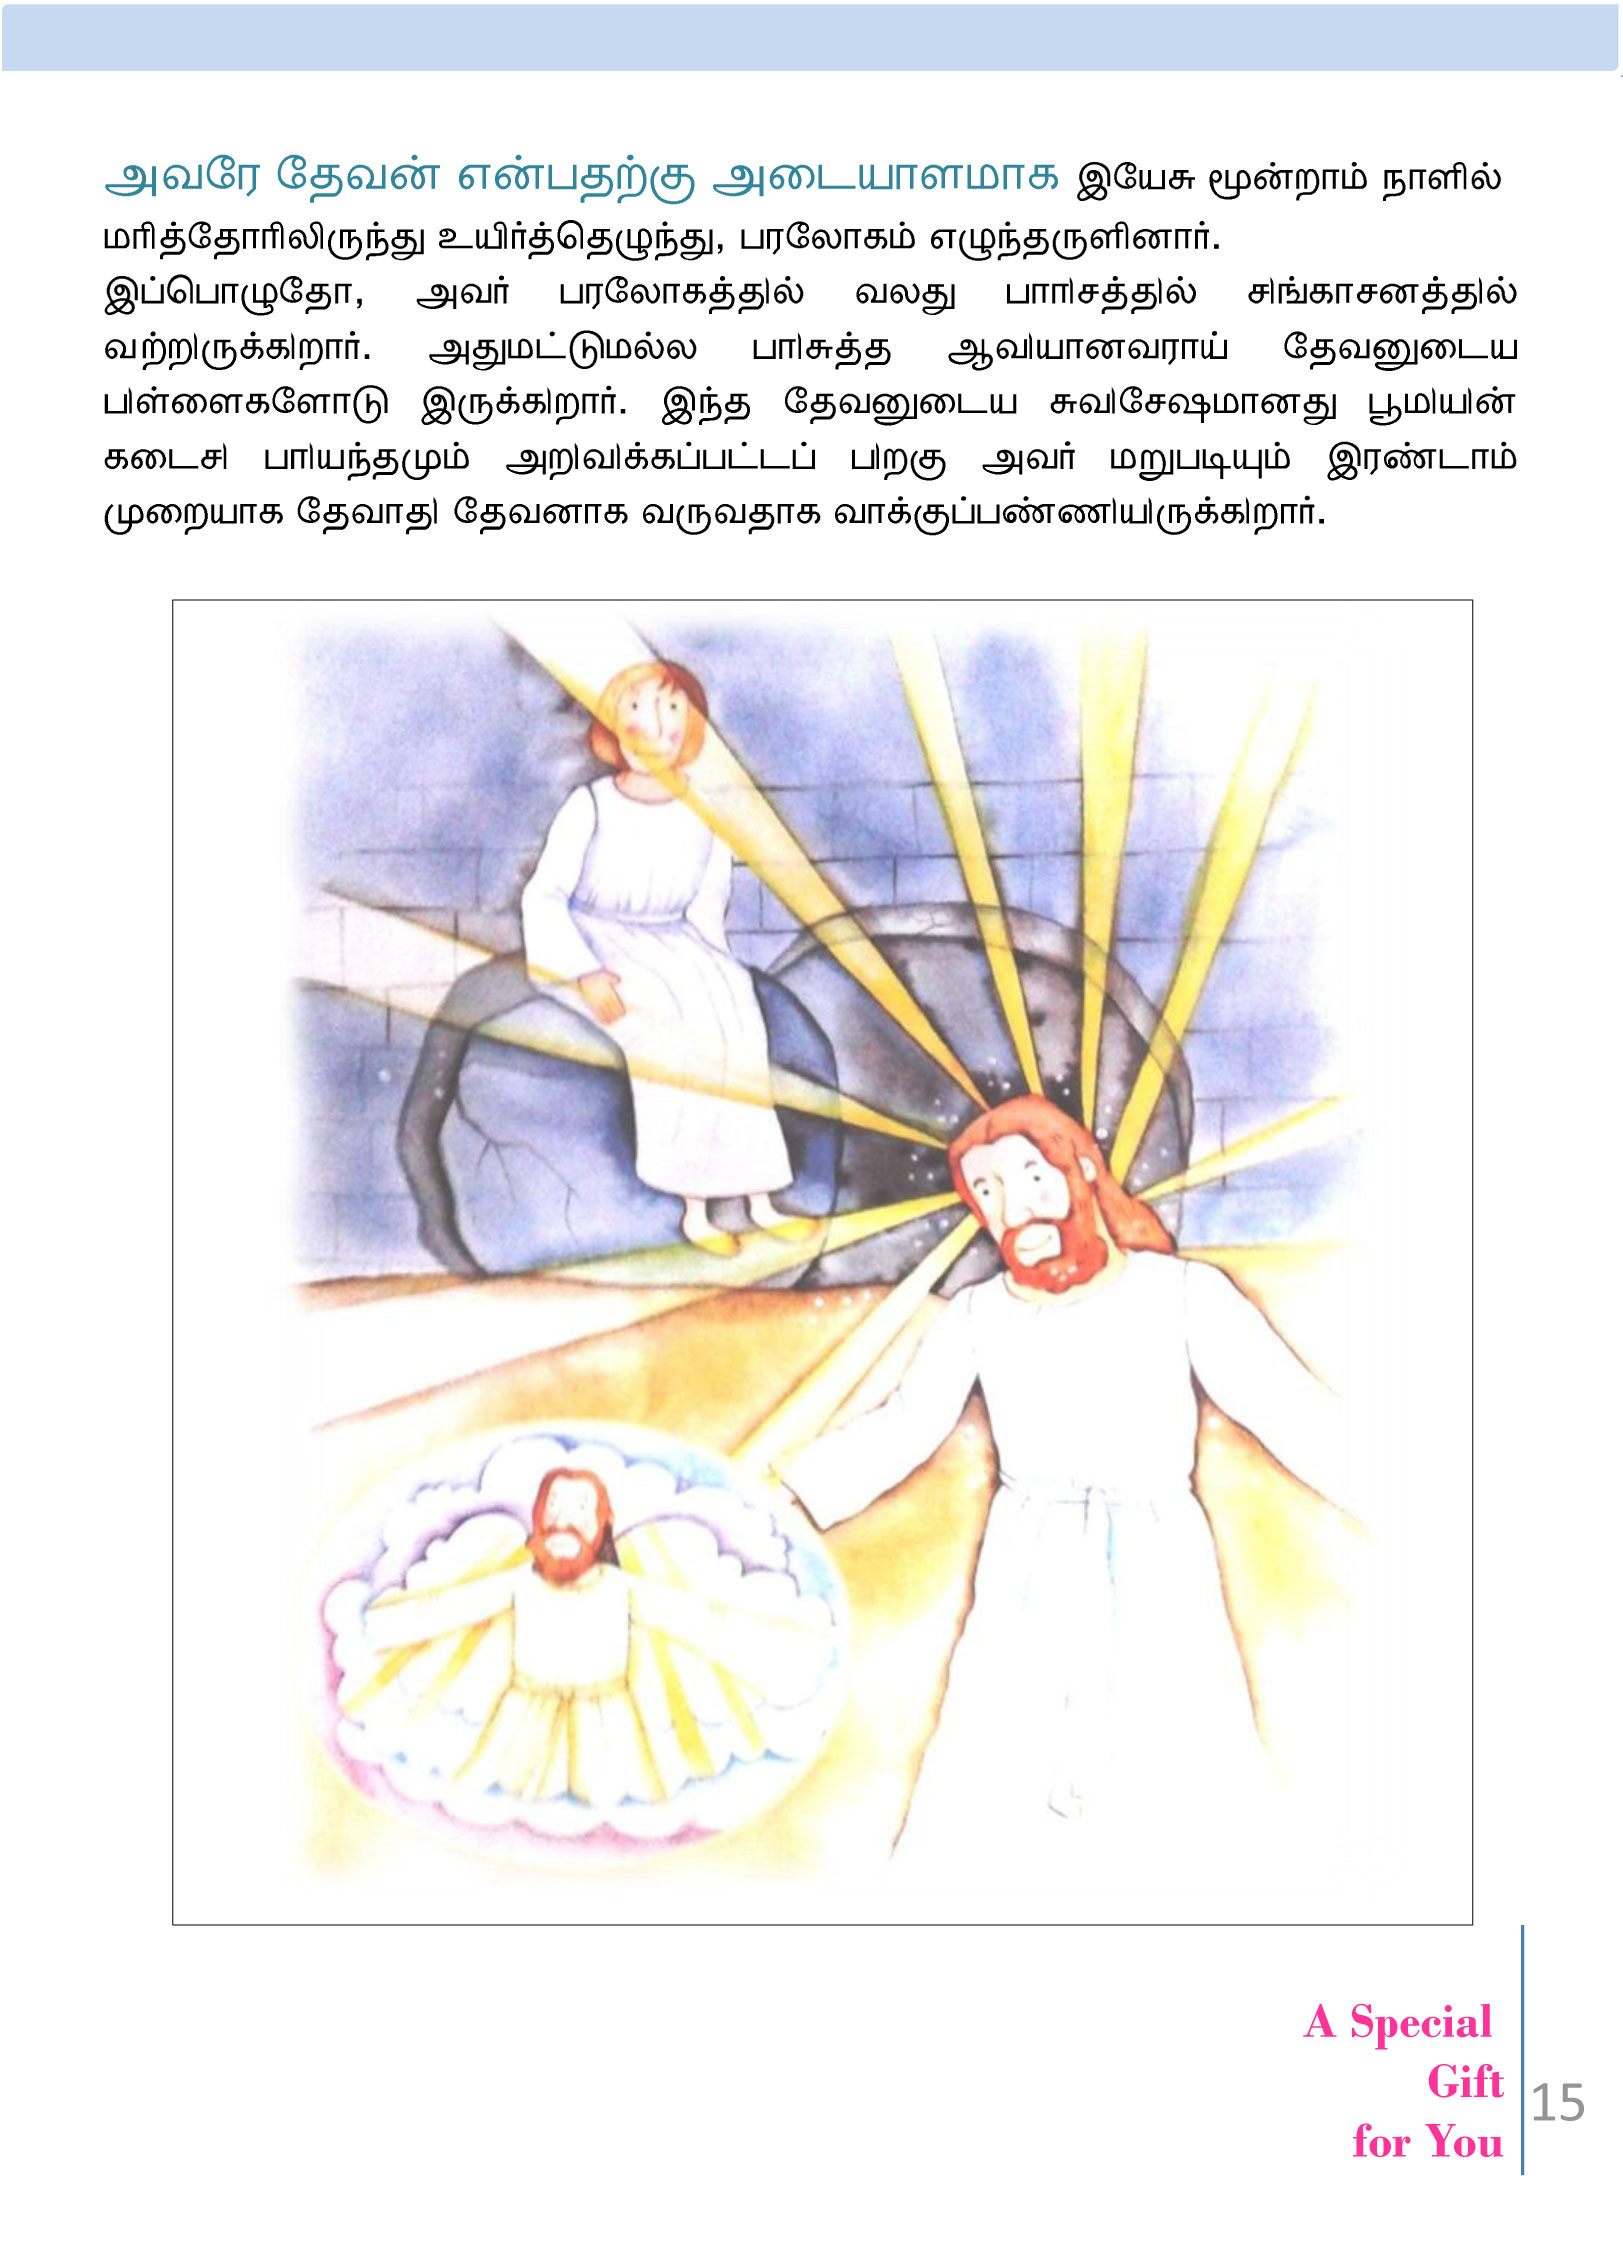 Tamil-Evangelism-Book-Pdf-3-15.jpg